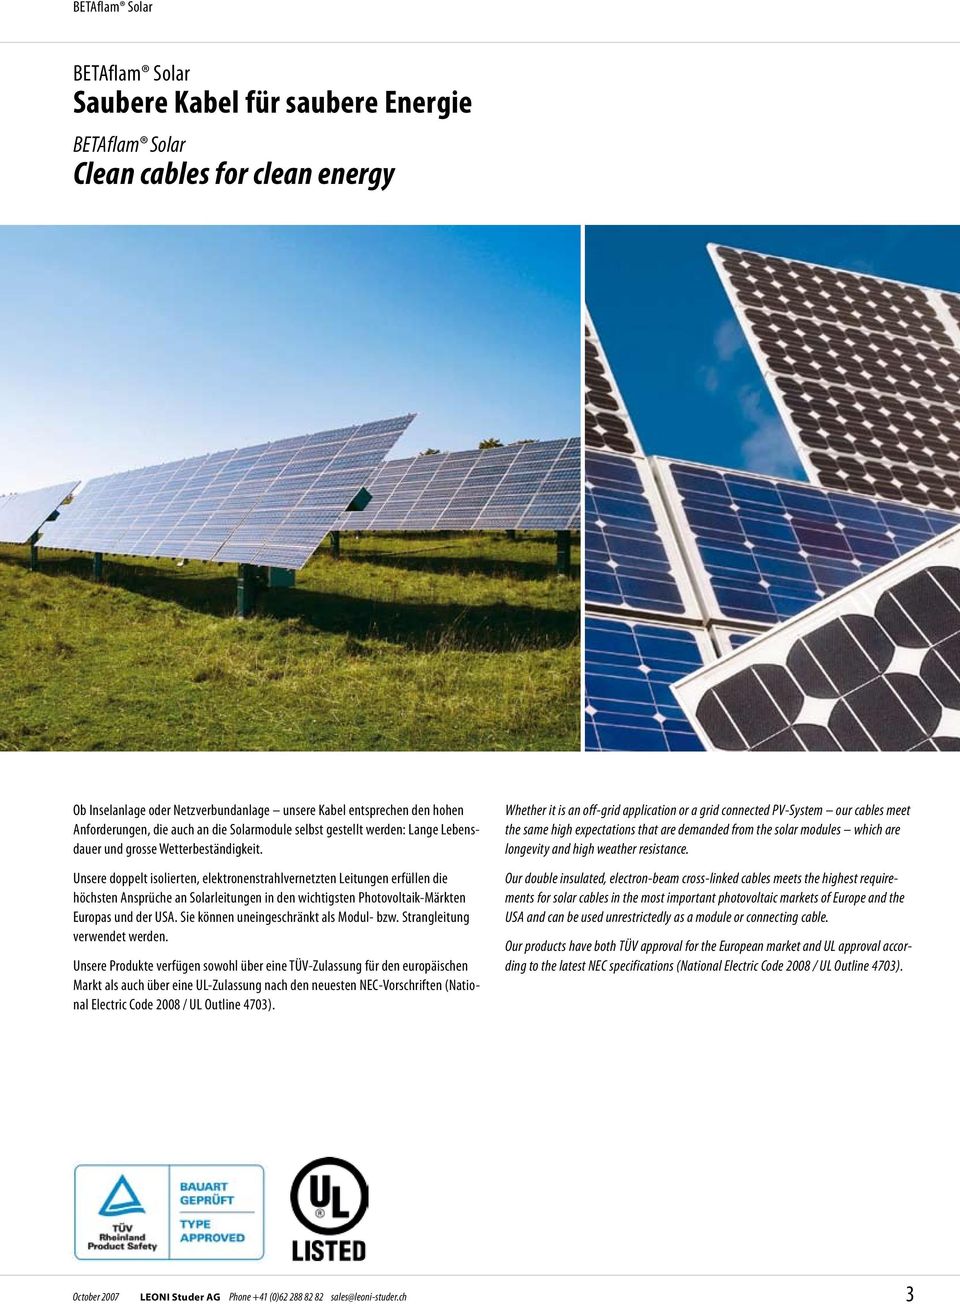 Unsere doppelt isolierten, elektronenstrahlvernetzten Leitungen erfüllen die höchsten Ansprüche an Solarleitungen in den wichtigsten Photovoltaik-Märkten Europas und der USA.